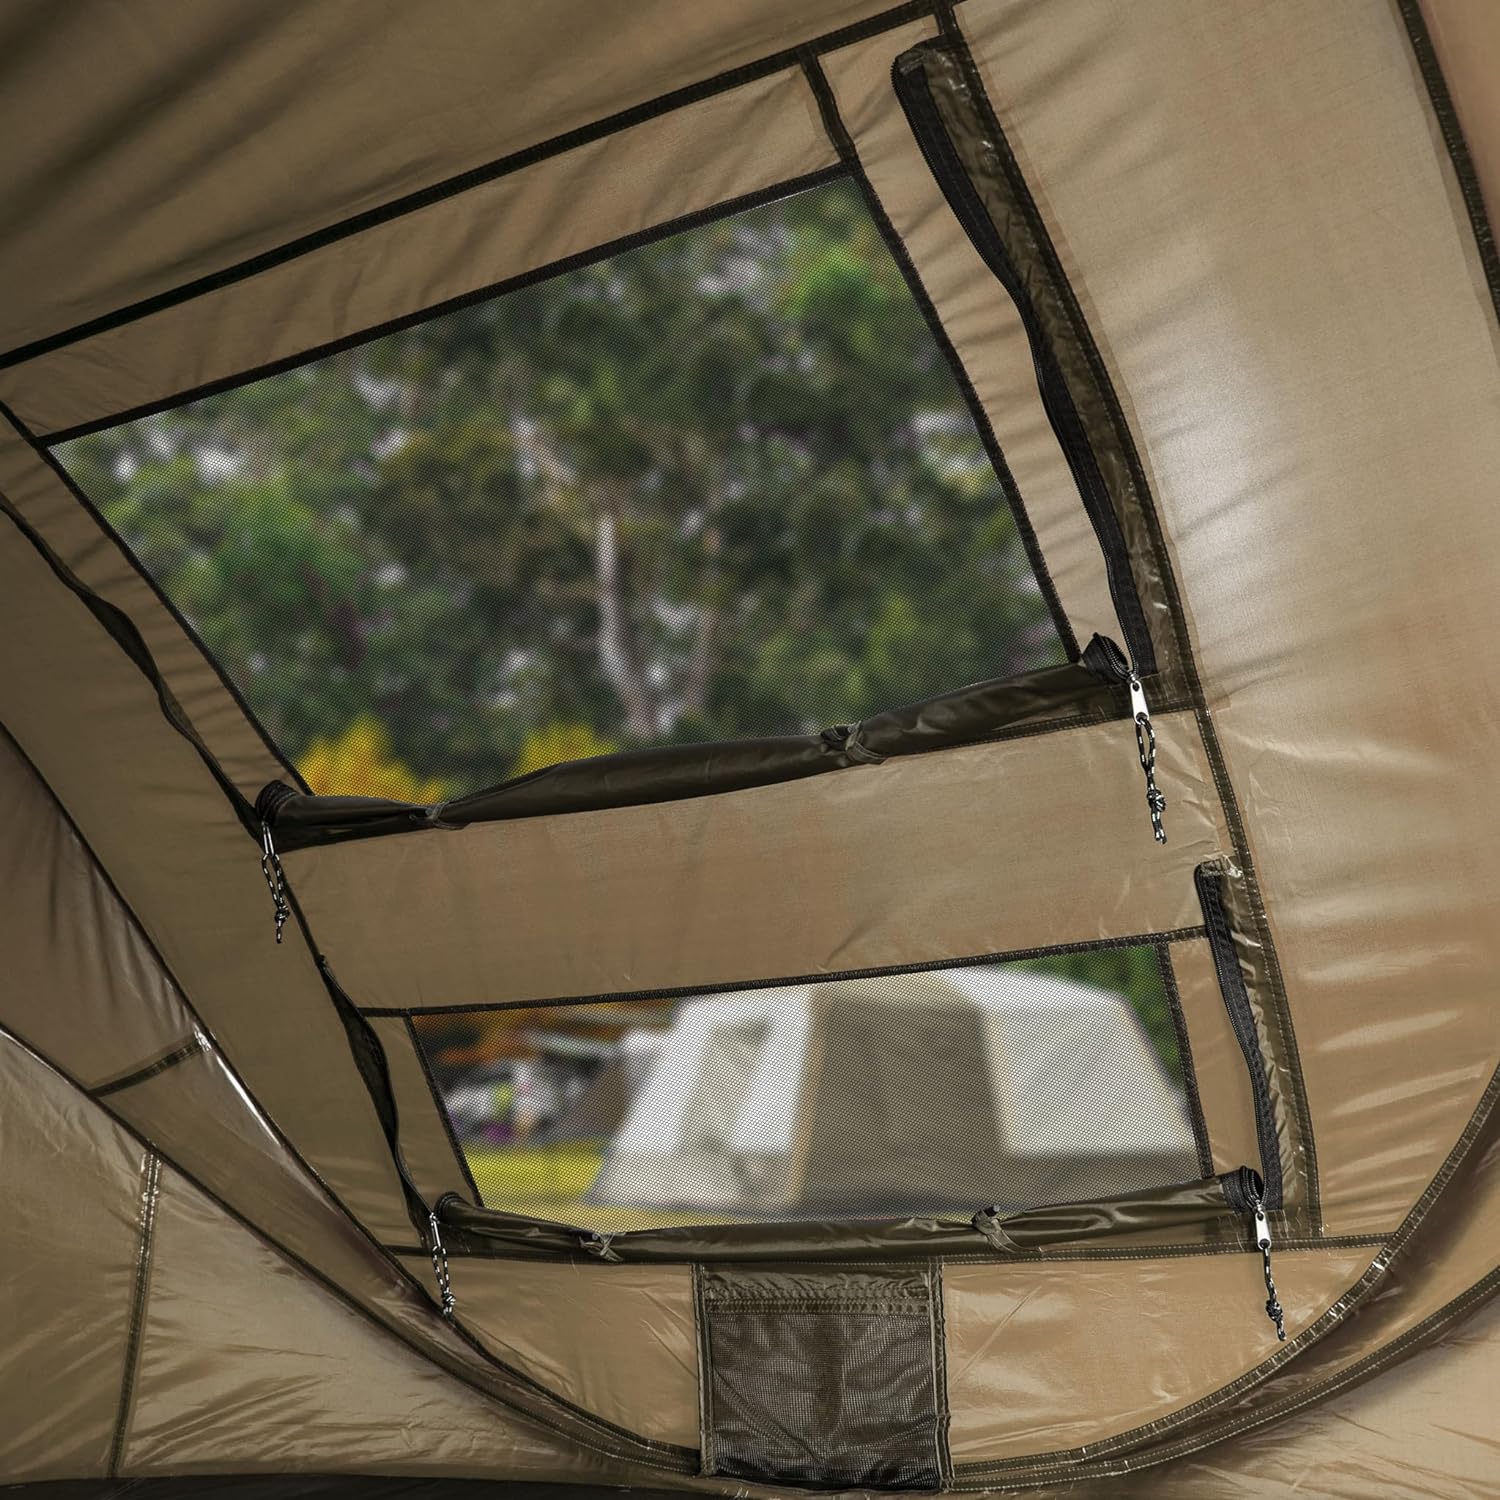 Tambu Acamp 3-4 Person Pop Up Tent